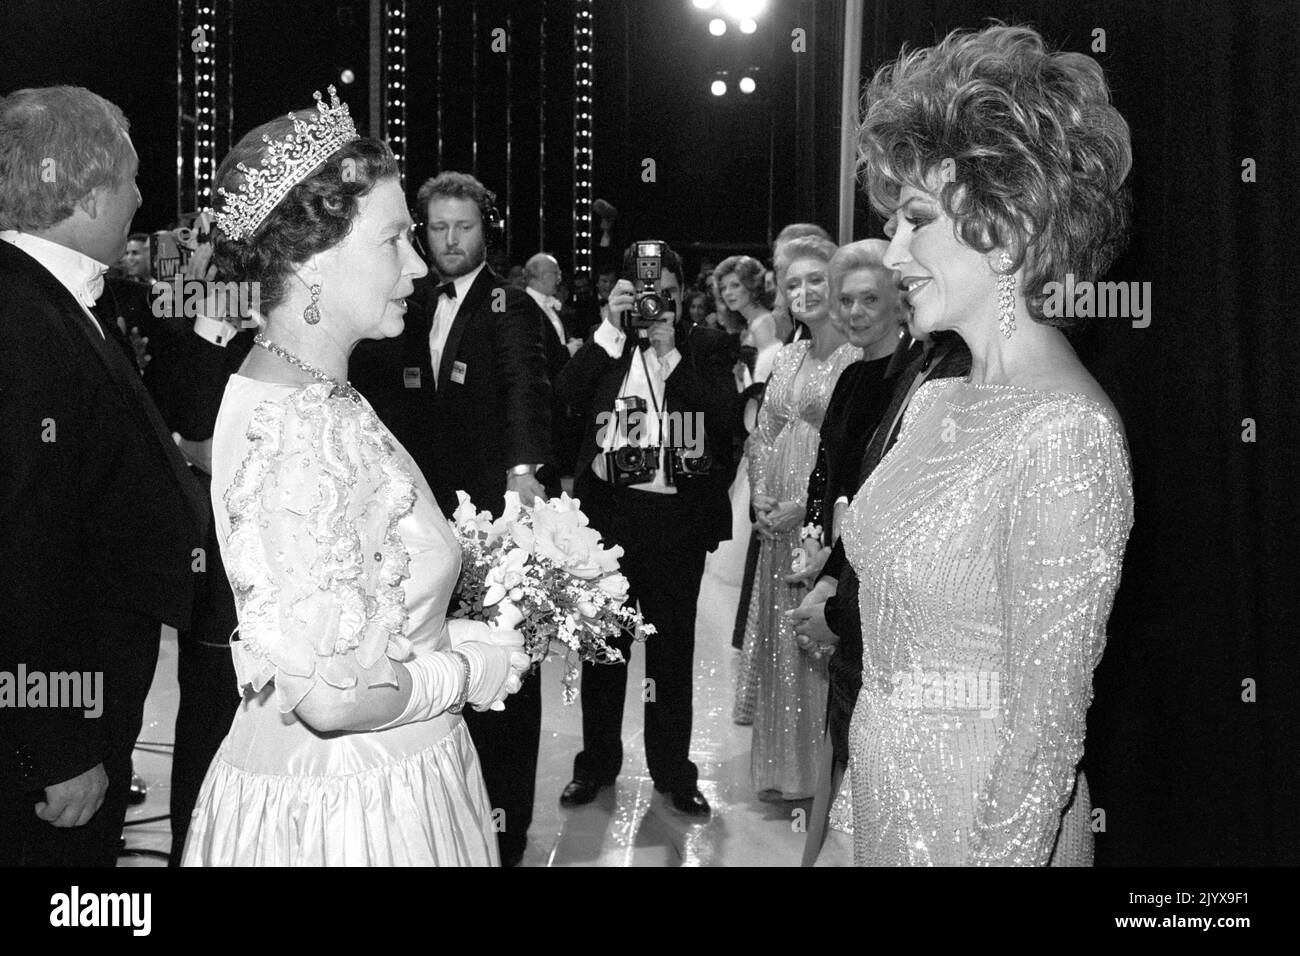 Datei-Foto vom 25/11/1985 von Queen Elizabeth II Treffen mit der Königin der Seifenopern, Dynasty Star Joan Collins, backstage nach der Royal Variety Performance im Theatre Royal, Drury Lane, London, in dem Joan half, einen Teil der Show zu präsentieren. Ausgabedatum: Donnerstag, 8. September 2022. Der Monarch war nicht von Prominenten angewidert und traf im Laufe der Jahrzehnte auf Hunderte von Showbiz-Stars, Pop-Legenden und Hollywood-Größen, aber viele gaben zu, Nerven zu haben, als sie dem berühmten, lang regierenden Herrscher gegenüberstanden. Stockfoto